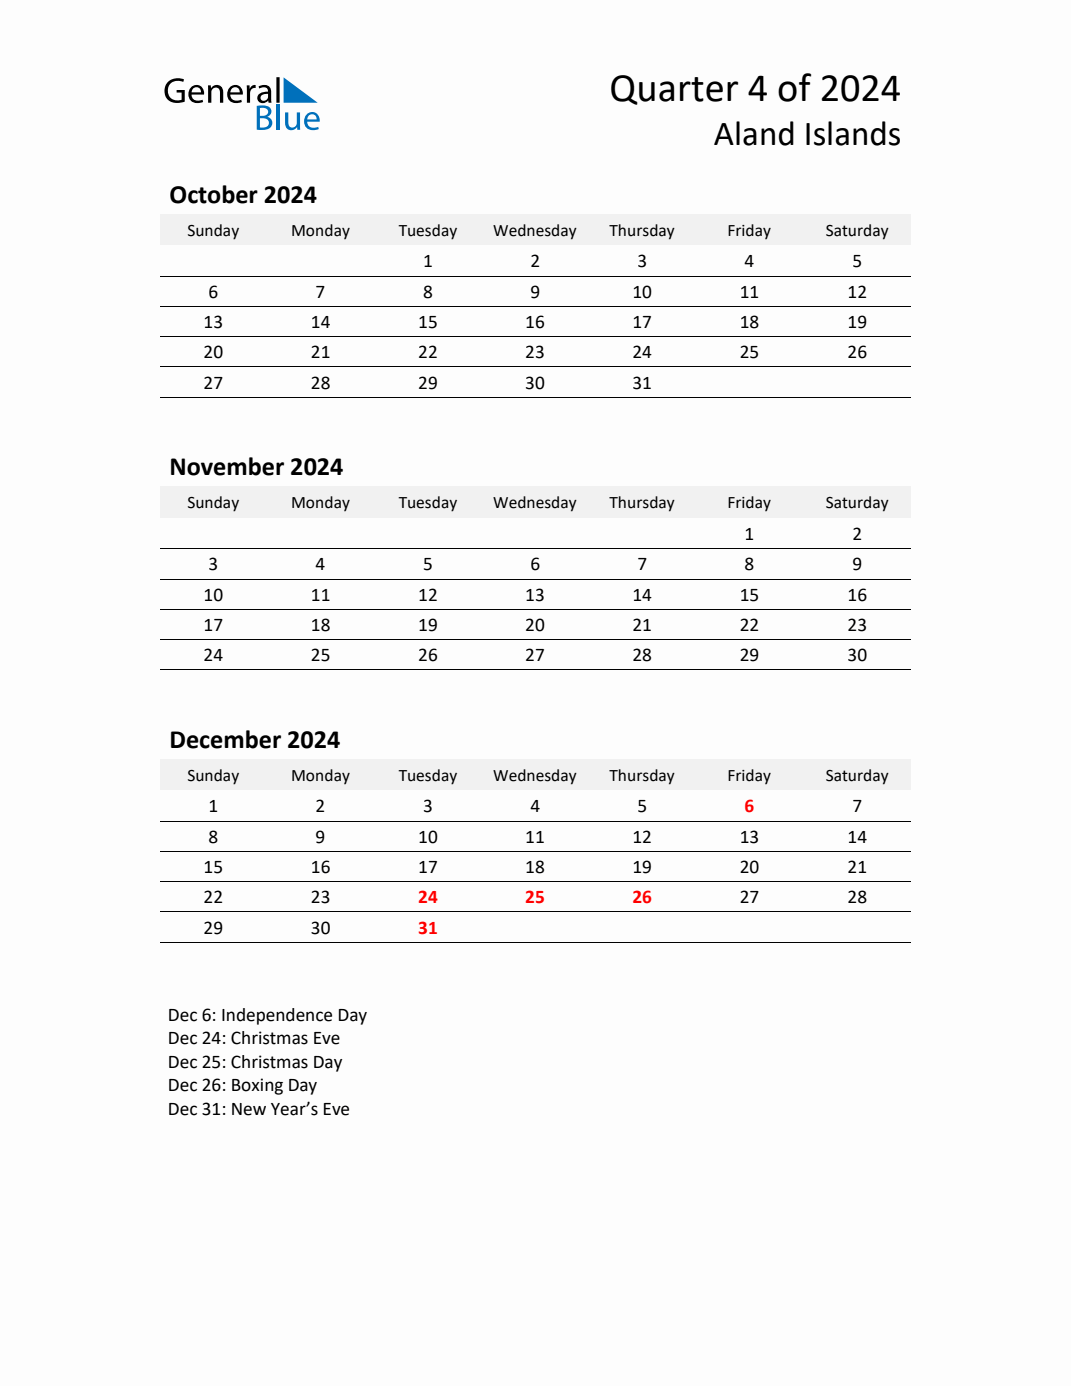 Q4 2024 Quarterly Calendar with Aland Islands Holidays